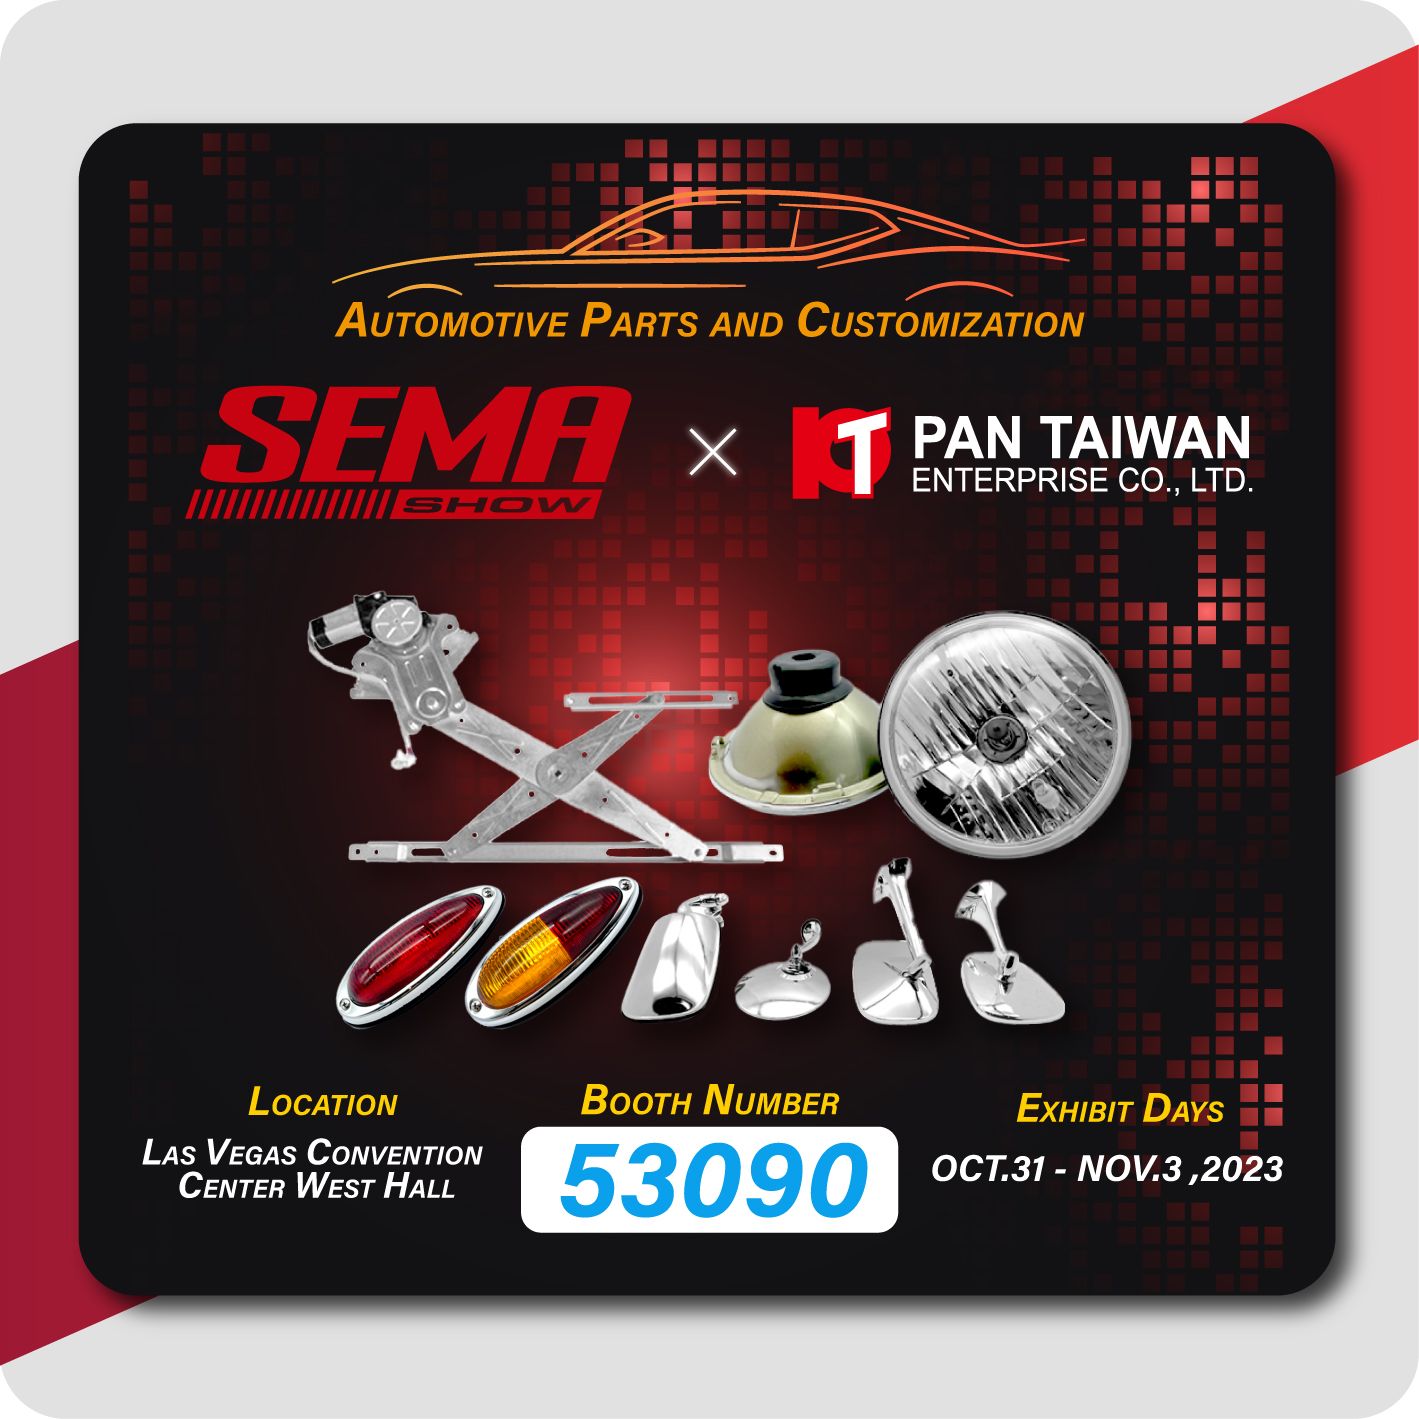 Pan Taiwan는 SEMA 2023에 참가하여 창문 레귤레이터, 클래식 자동차 부품 및 자동차 및 전기 하이브리드 자동차에 대한 맞춤 서비스를 모든 고객에게 시연합니다.